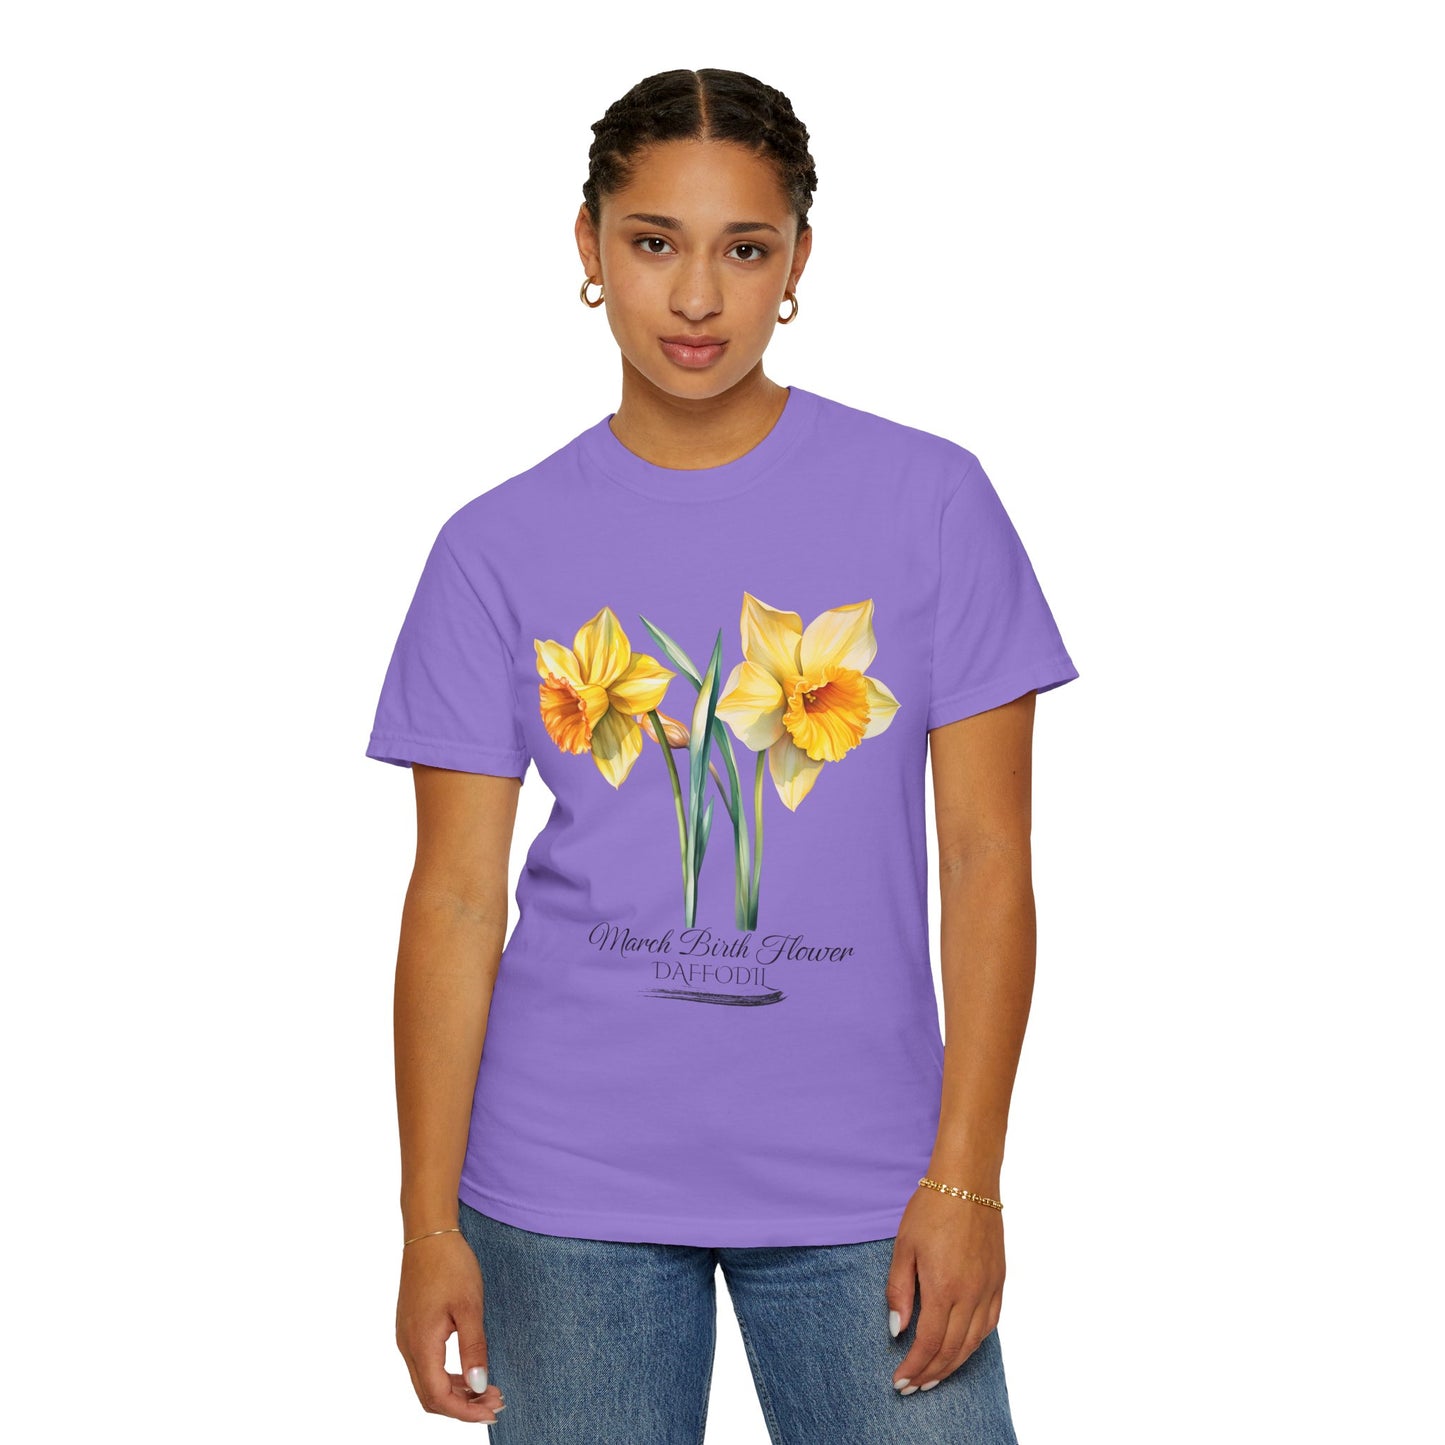 March Birth Flower "Daffodil" - Unisex Garment-Dyed T-shirt